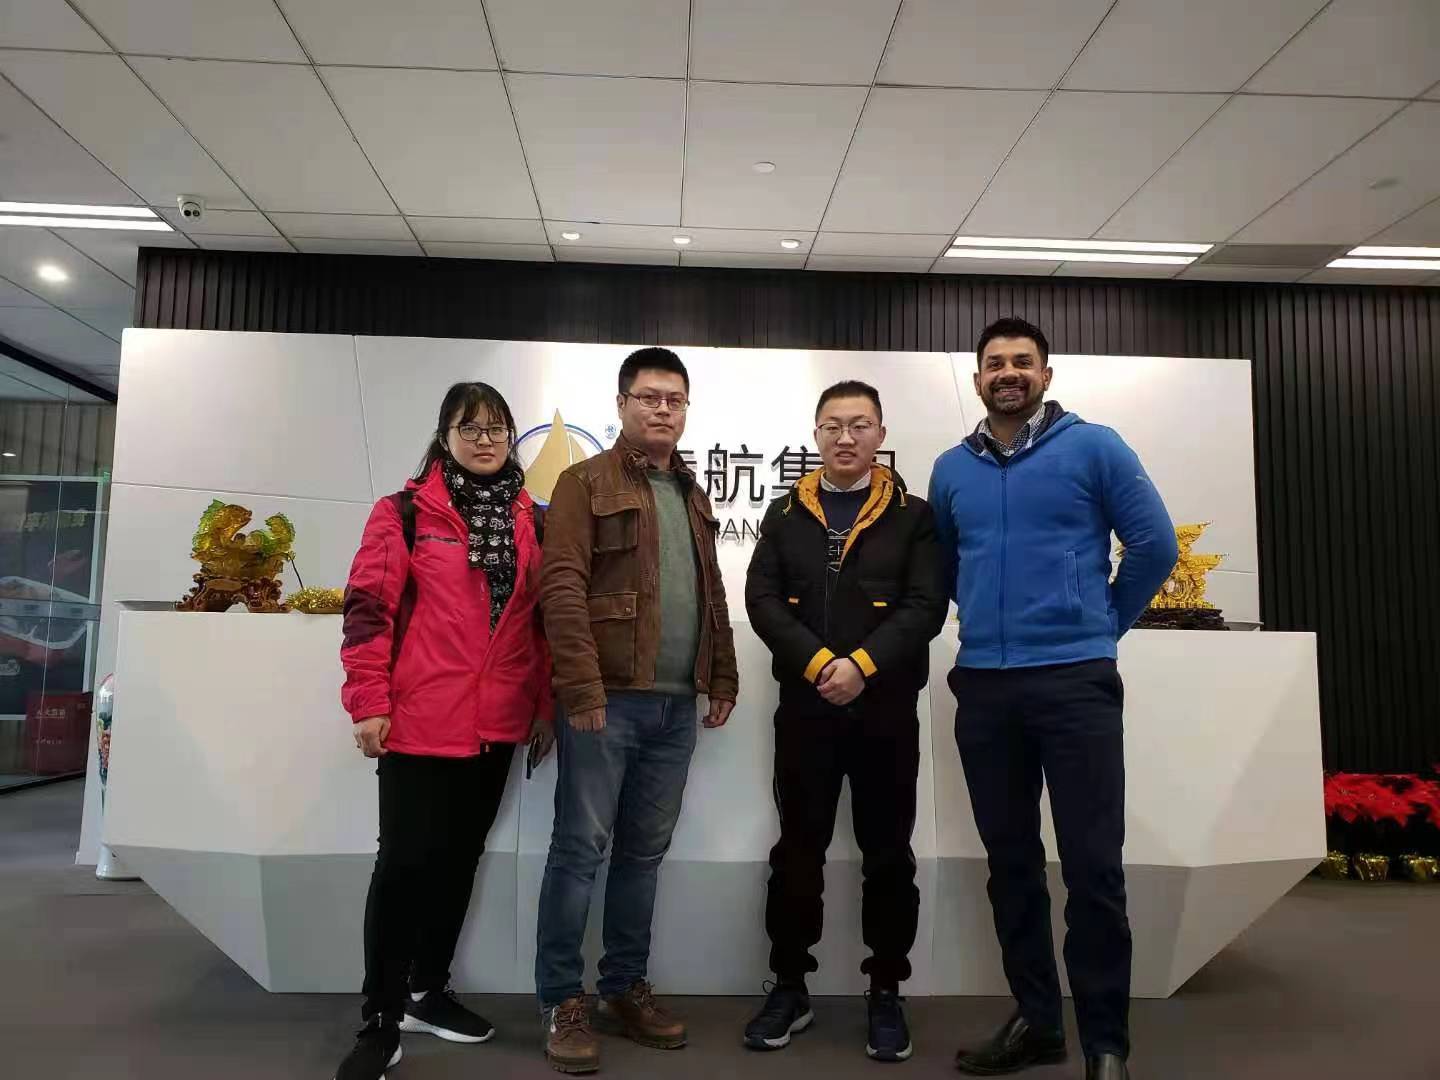 Entrée ouverte en Chine, M. Layne a visité notre entreprise